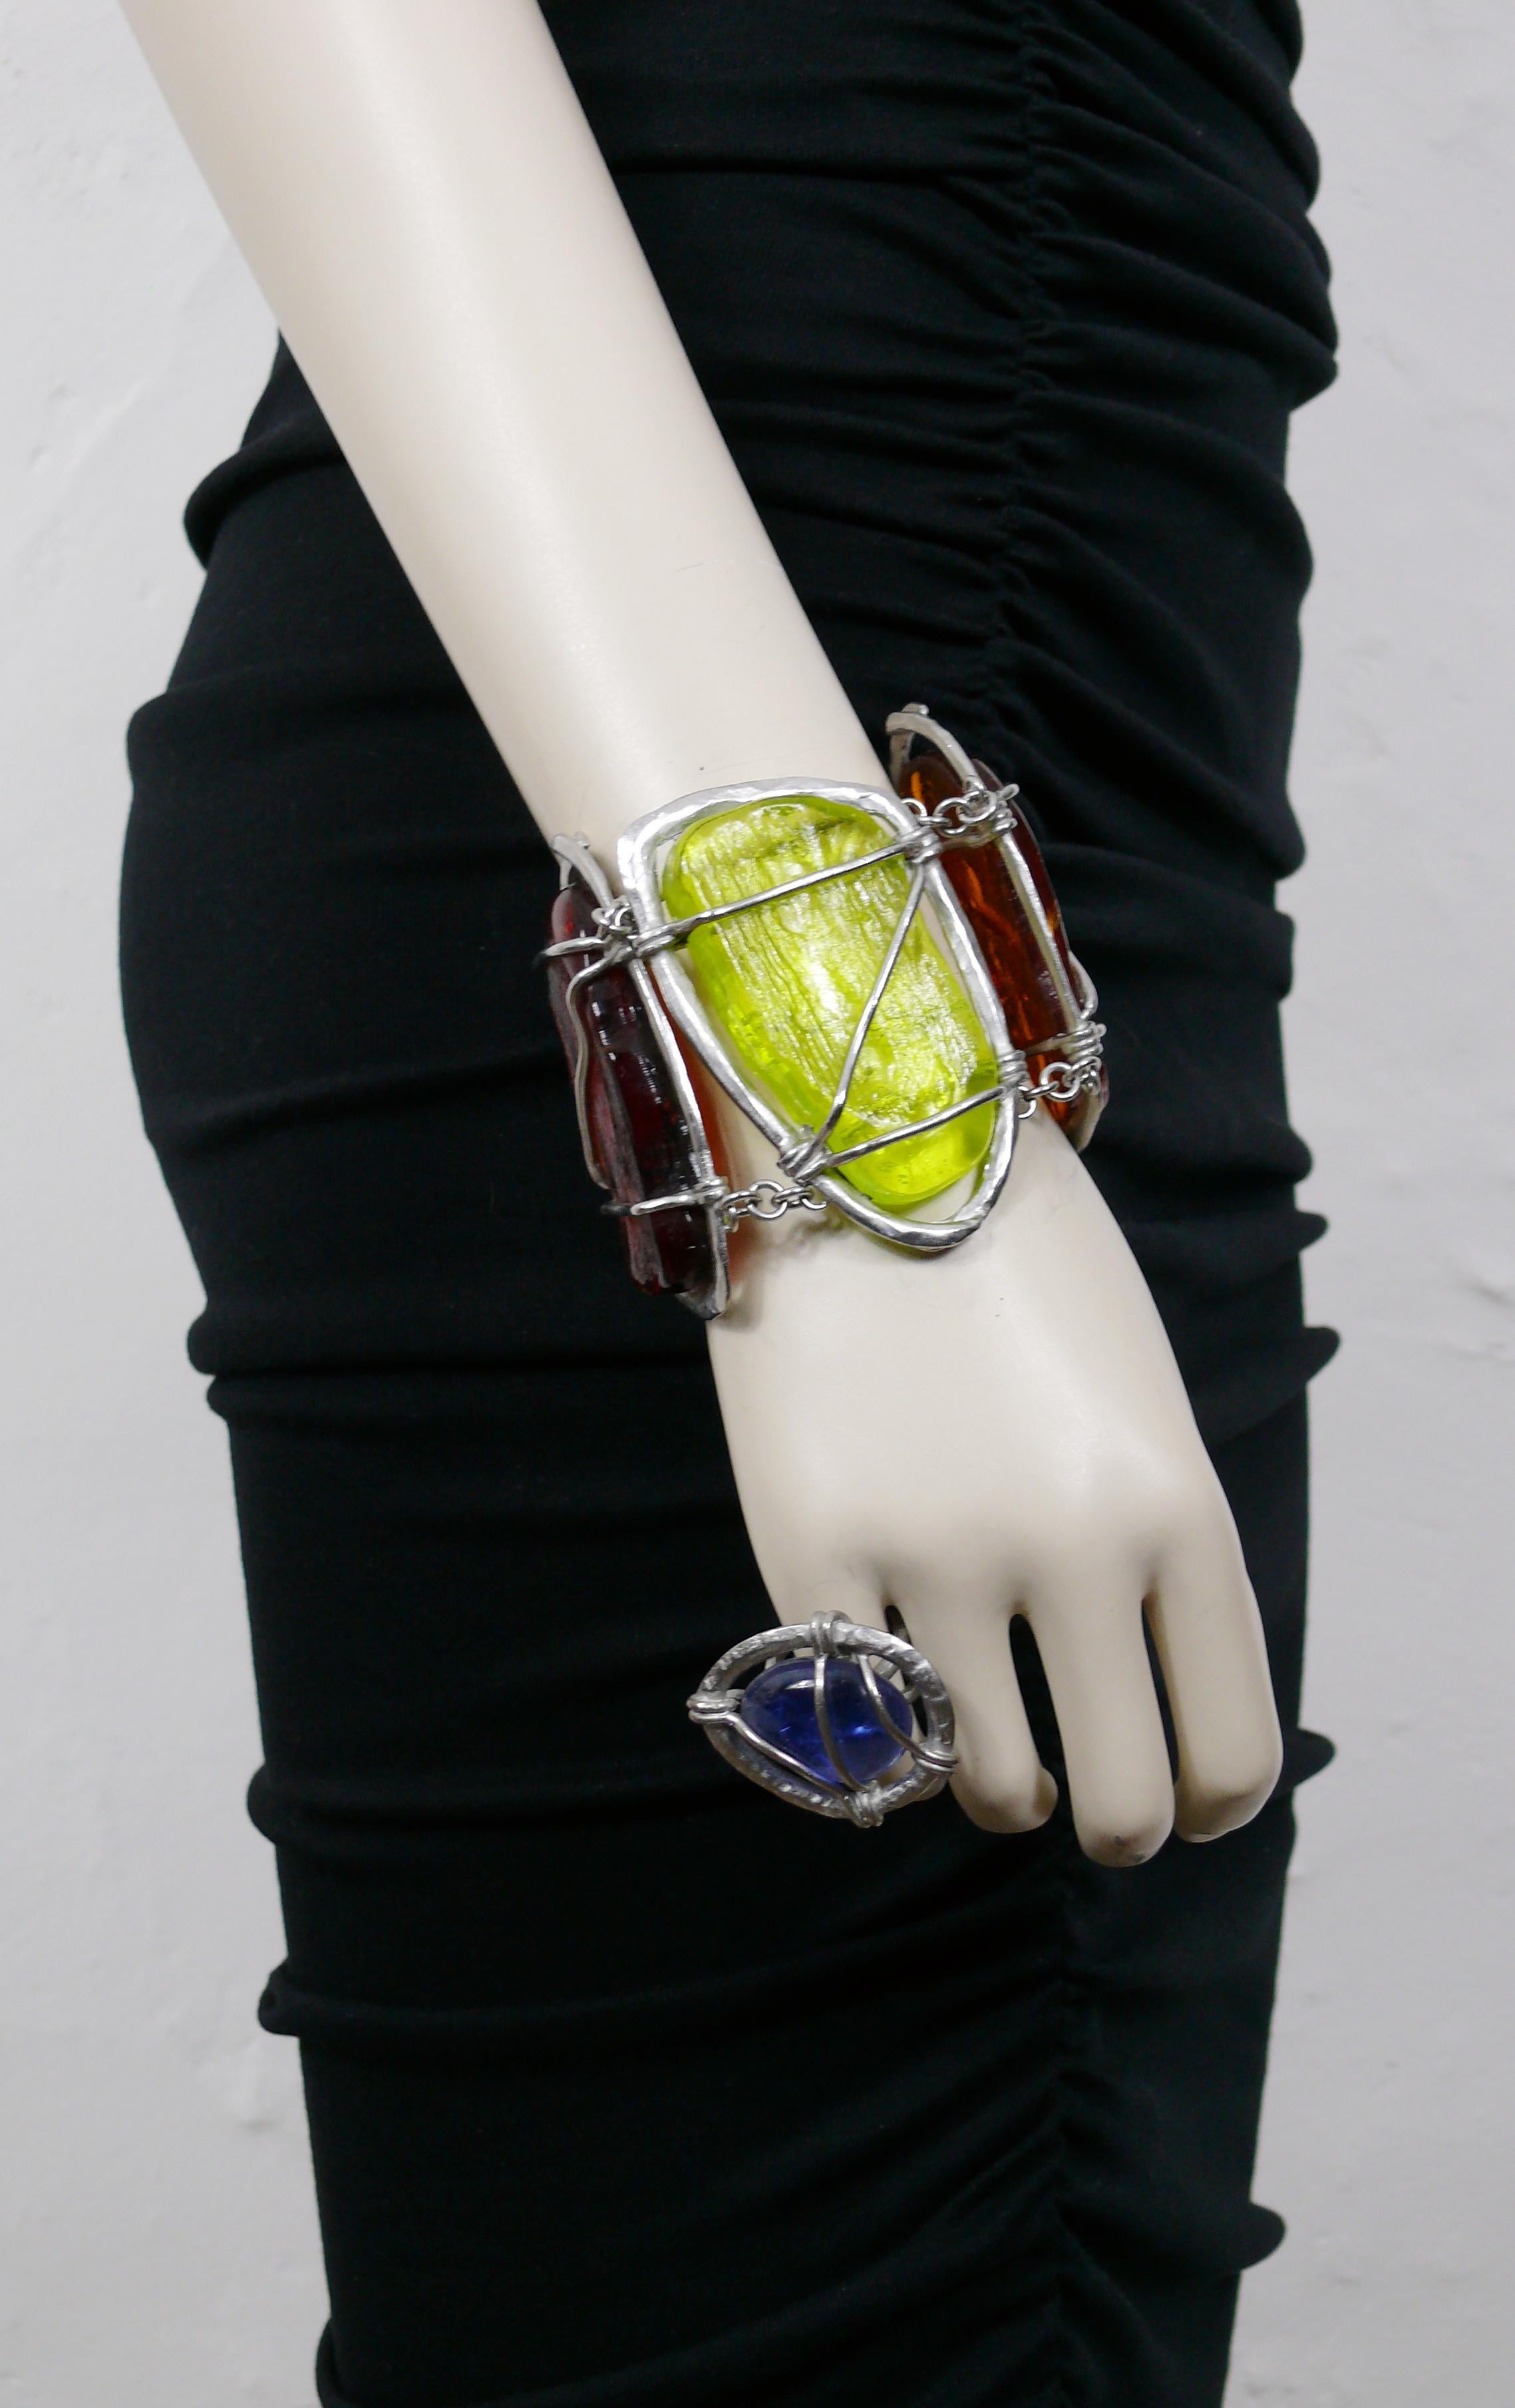 L'ensemble bracelet et bague abrutalistes JEAN PAUL GAULTIER est orné de cabochons de verre multicolores encastrés.

Matériel métallique de couleur argentée.
Patine antique.

Marqué JEAN PAUL GAULTIER sur le bracelet.
La bague est NON